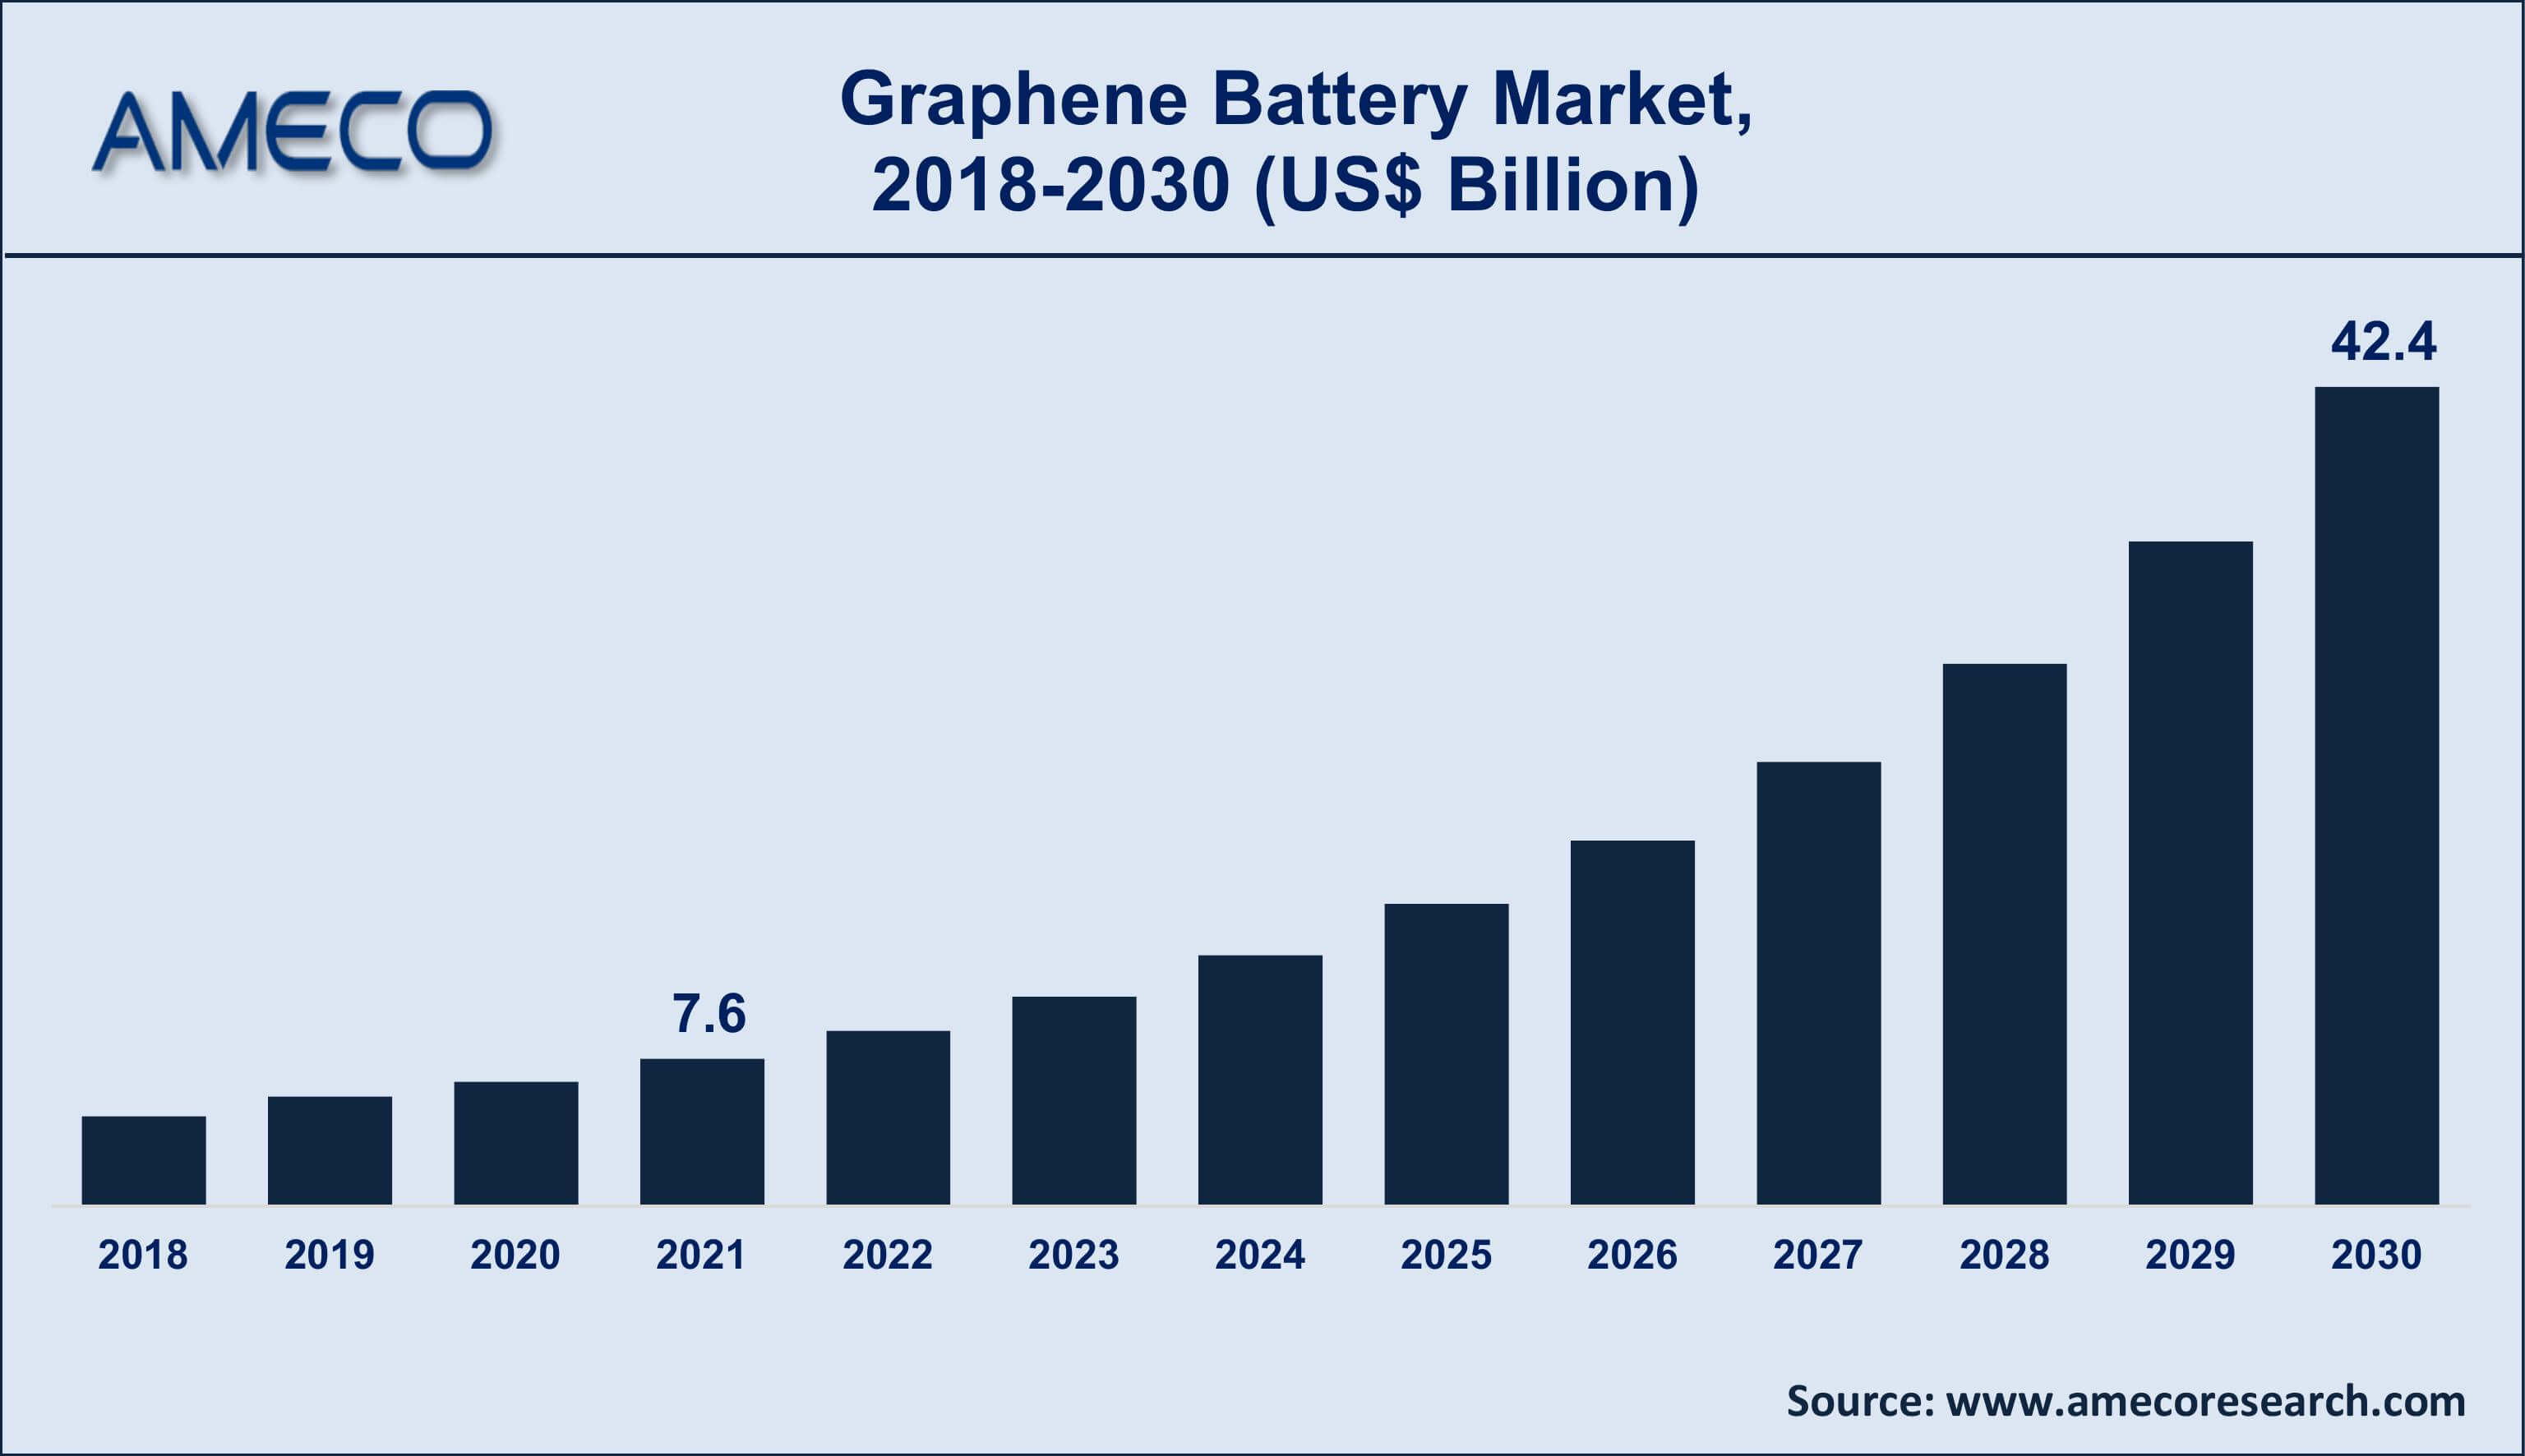 Graphene Battery Market CAGR